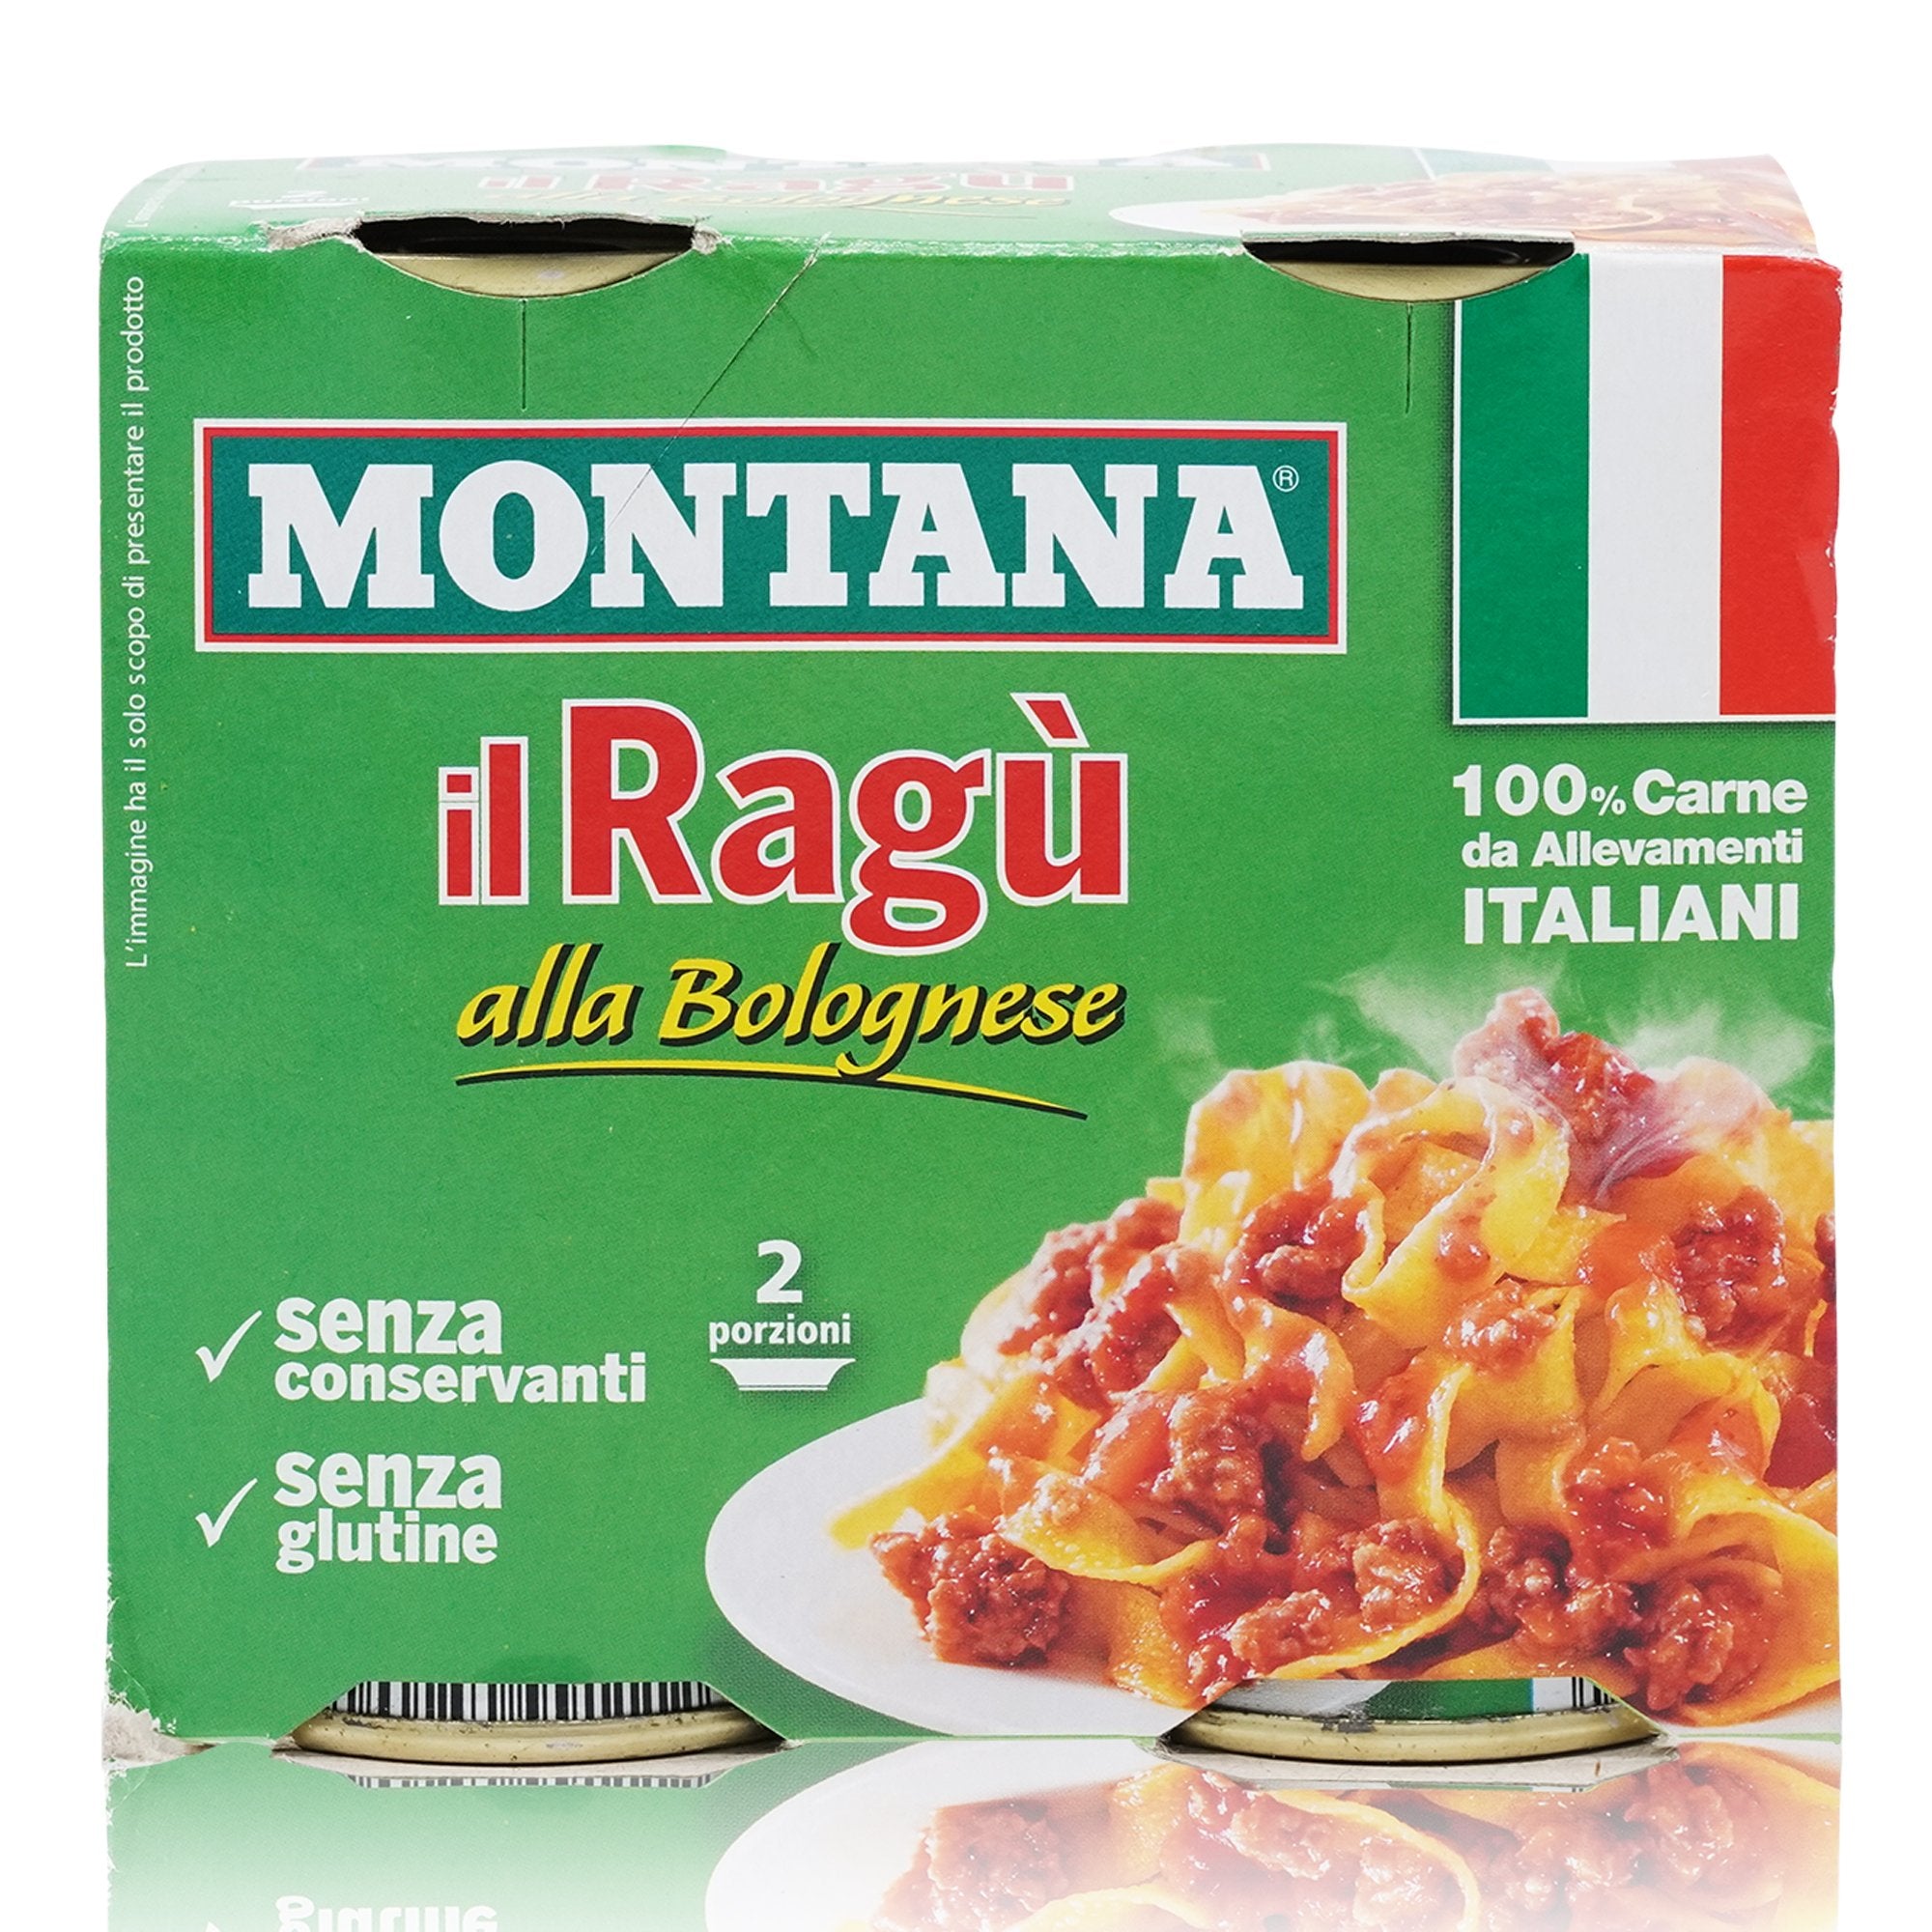 MONTANA Ragù alla Bolognese – Tomatensosse Bolognese - 0,360kg - italienisch-einkaufen.de